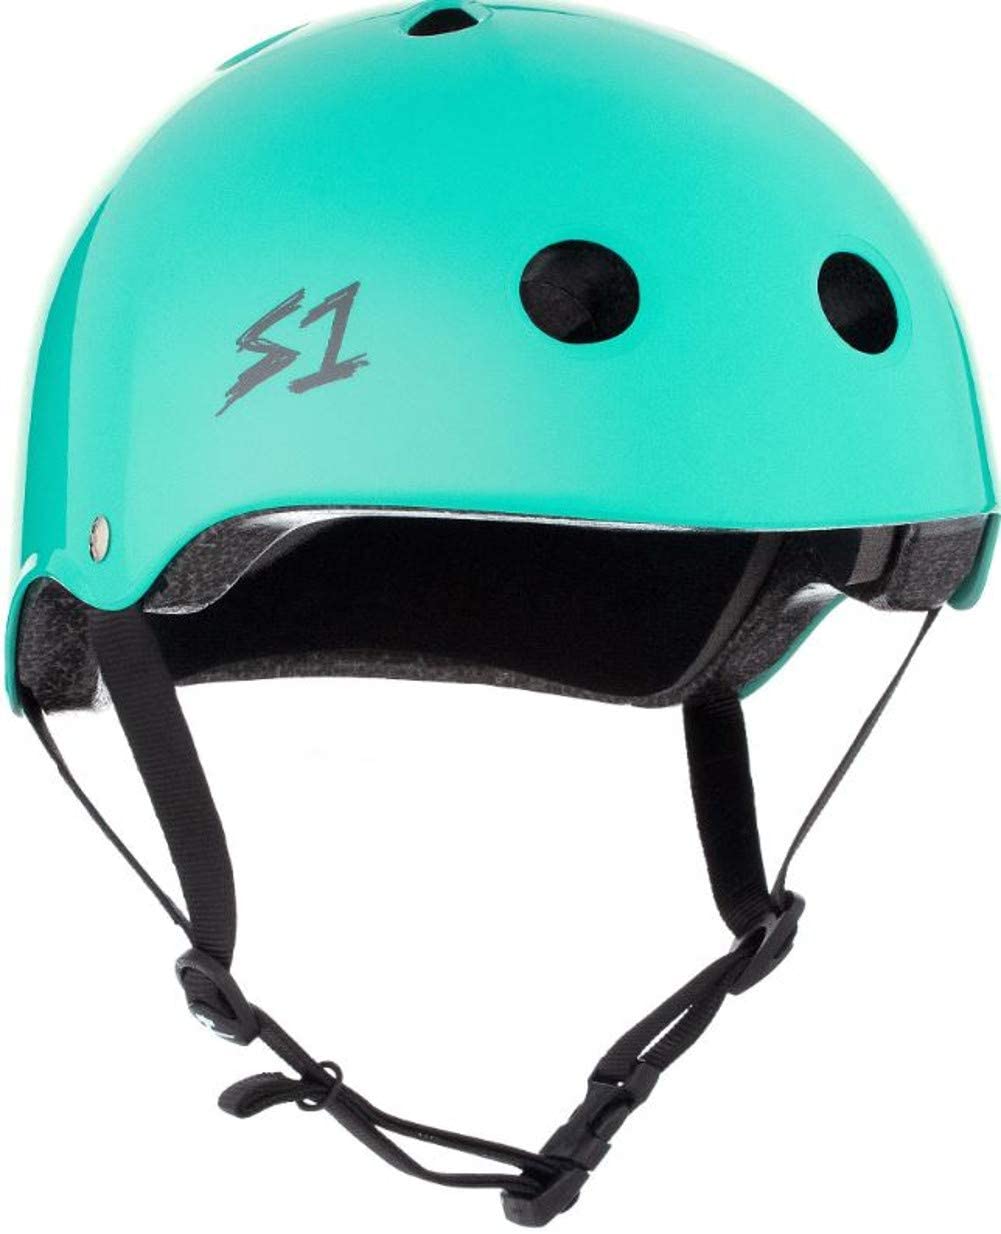 S One Lifer Helmet Skate - Lagoon Gloss